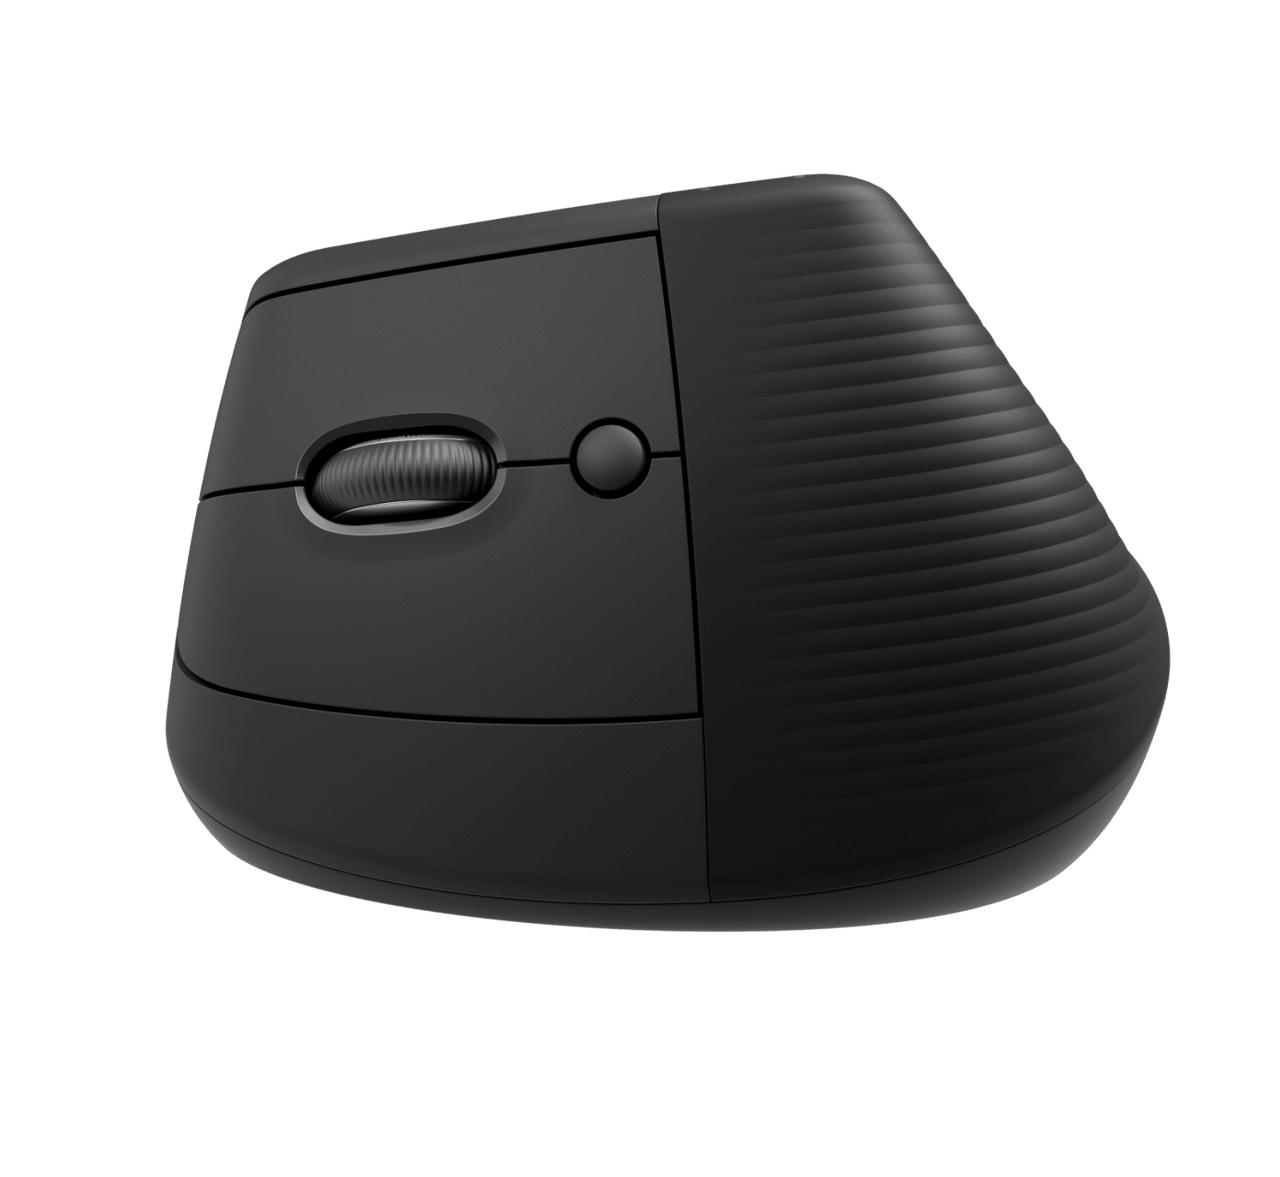 Logitech Lift ergonomic mouse review: Ergo-easy